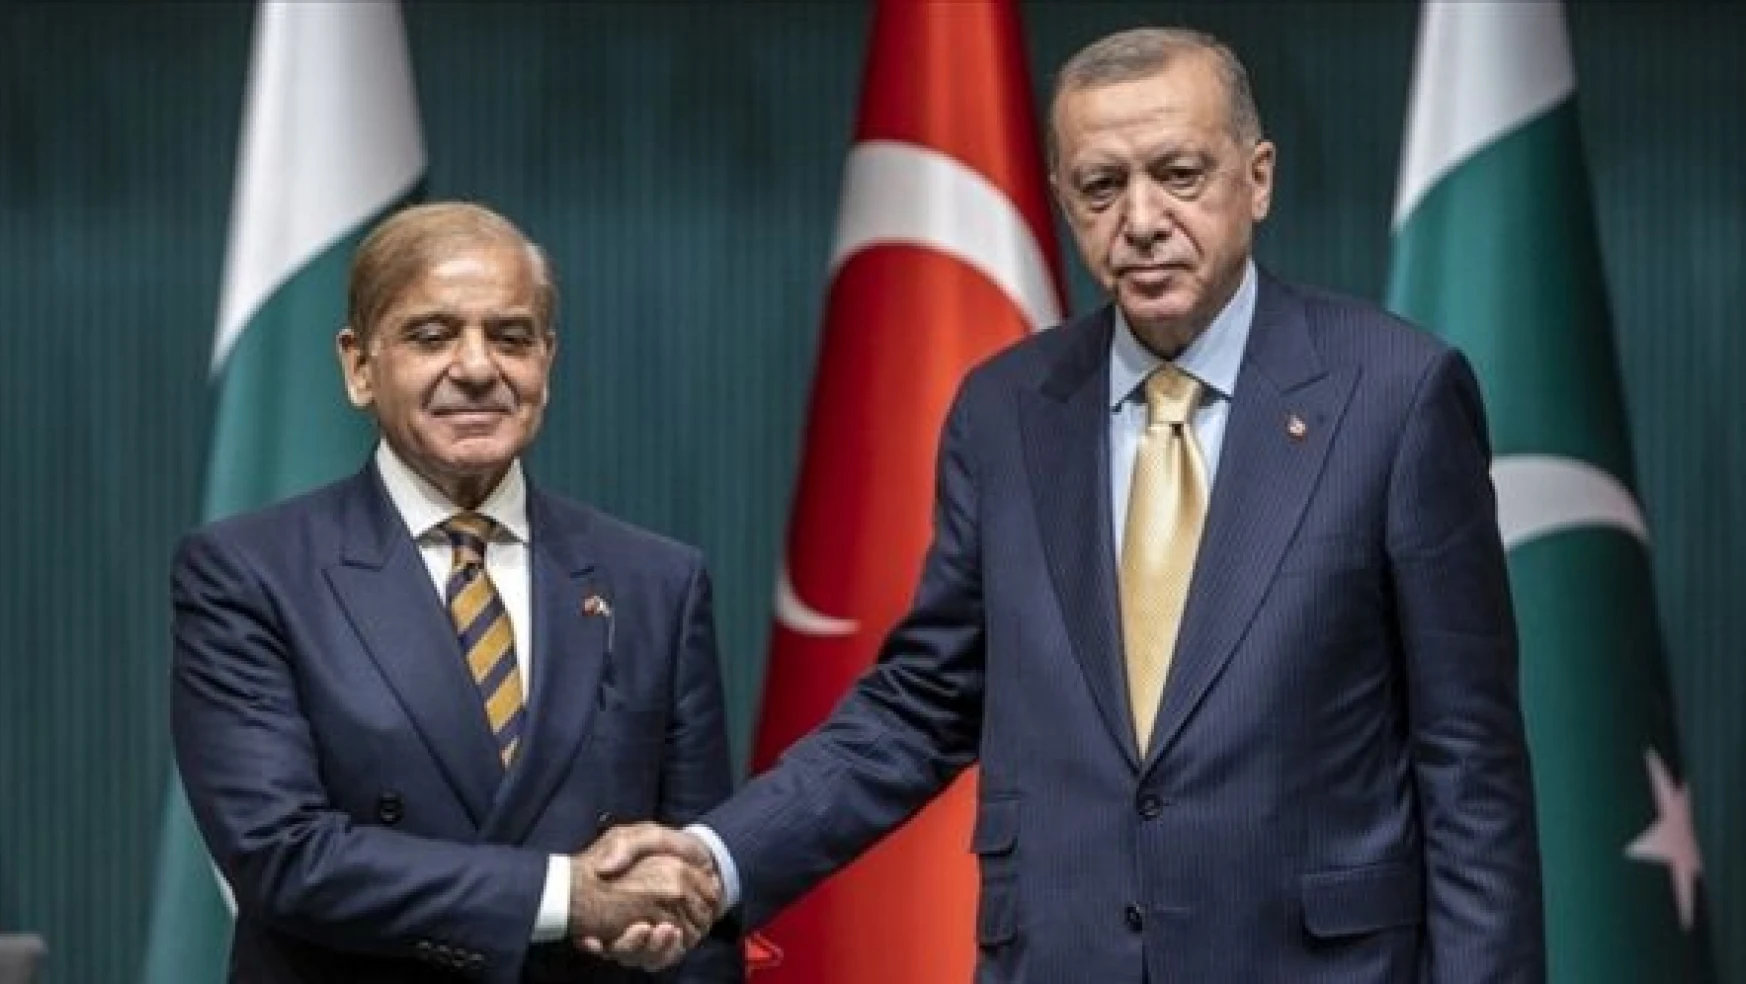 Cumhurbaşkanı Erdoğan, Pakistan Başbakanı Şerif ile görüştü